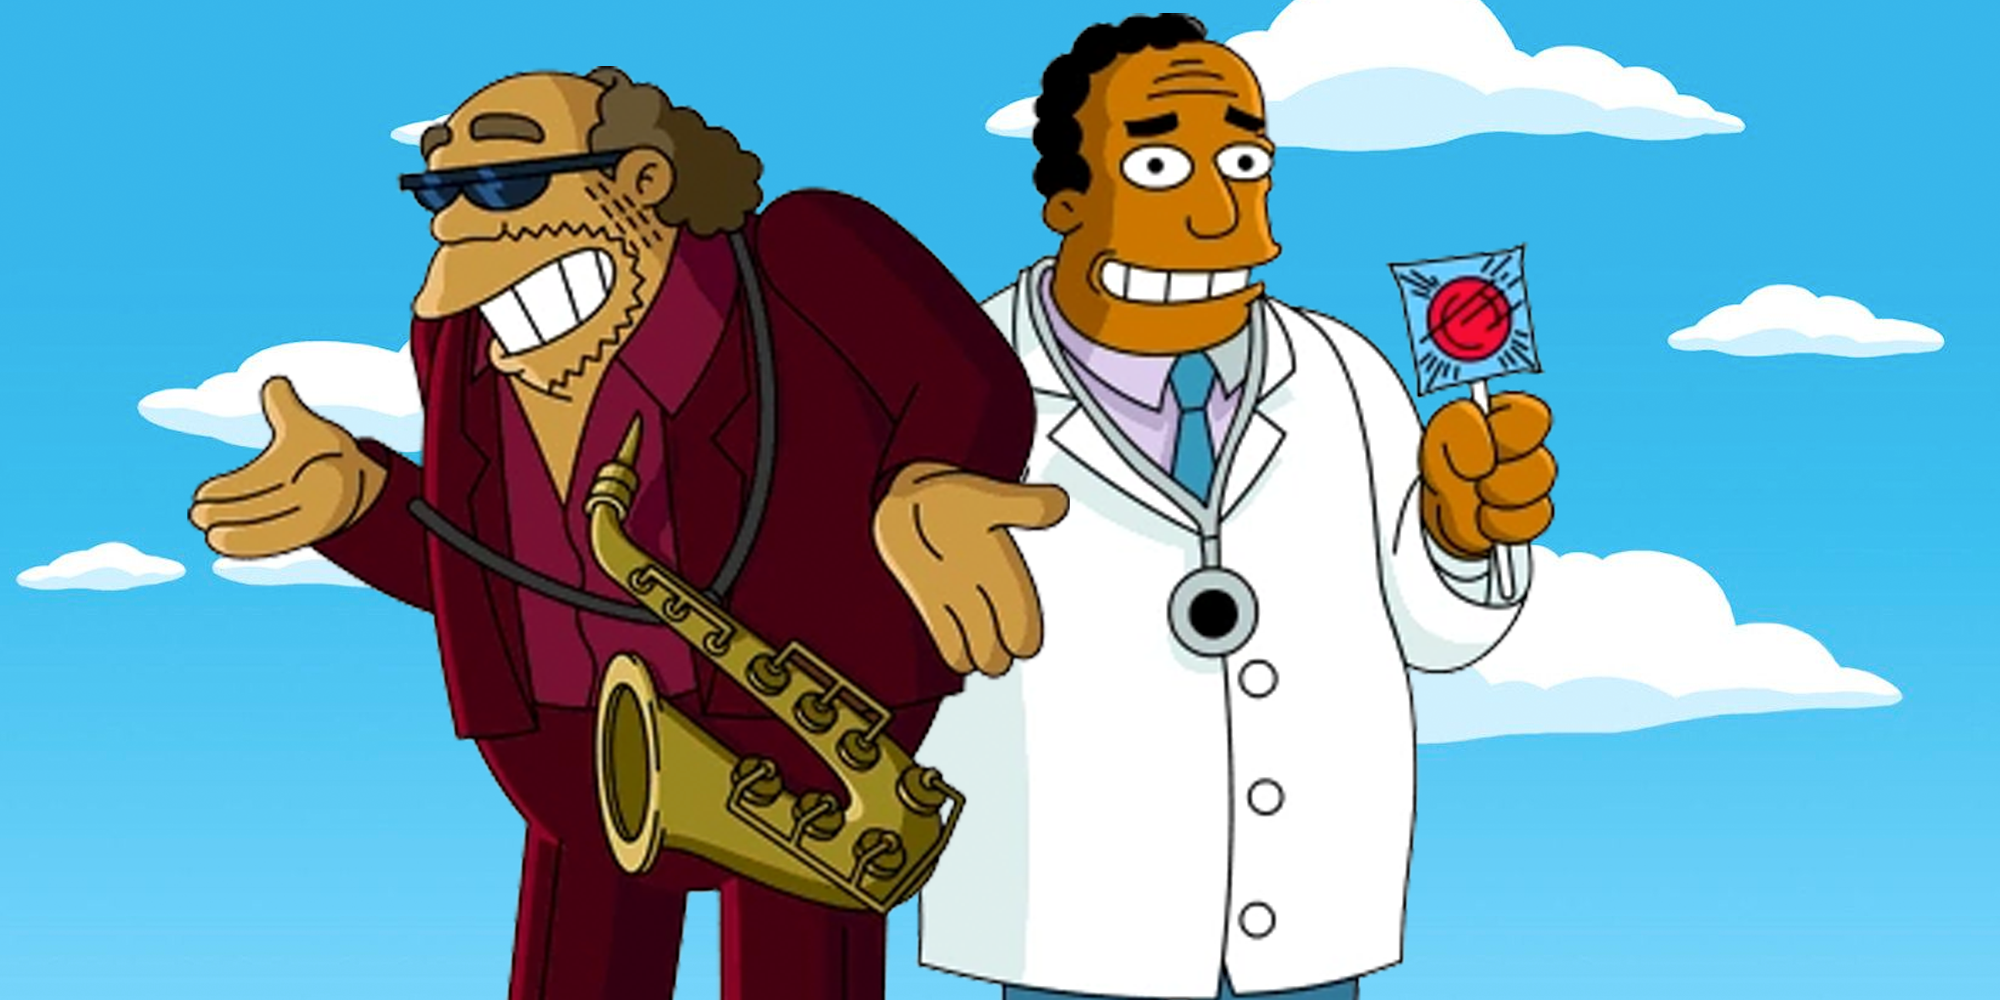 La refundición de The Simpsons Bleeding Gums crea una extraña paradoja de Springfield